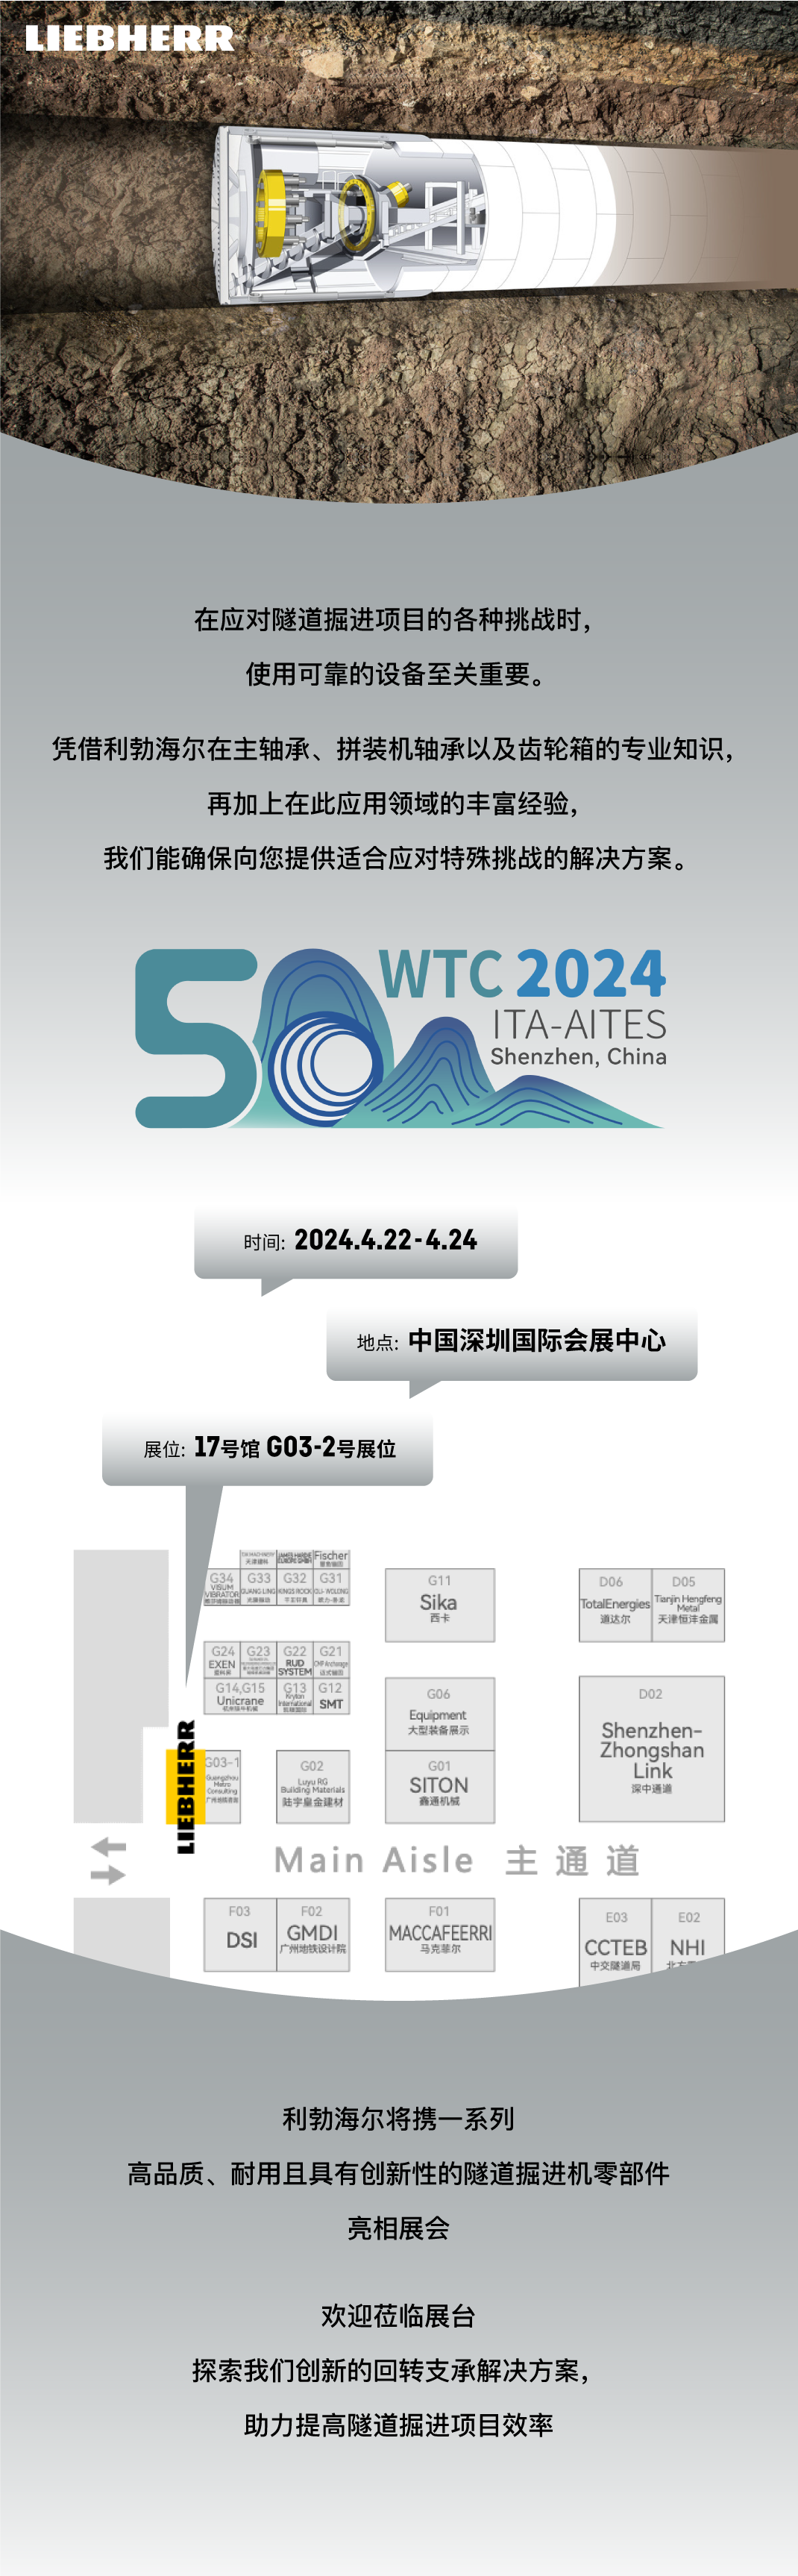 利勃海尔诚邀您参加WTC 2024世界隧道大会